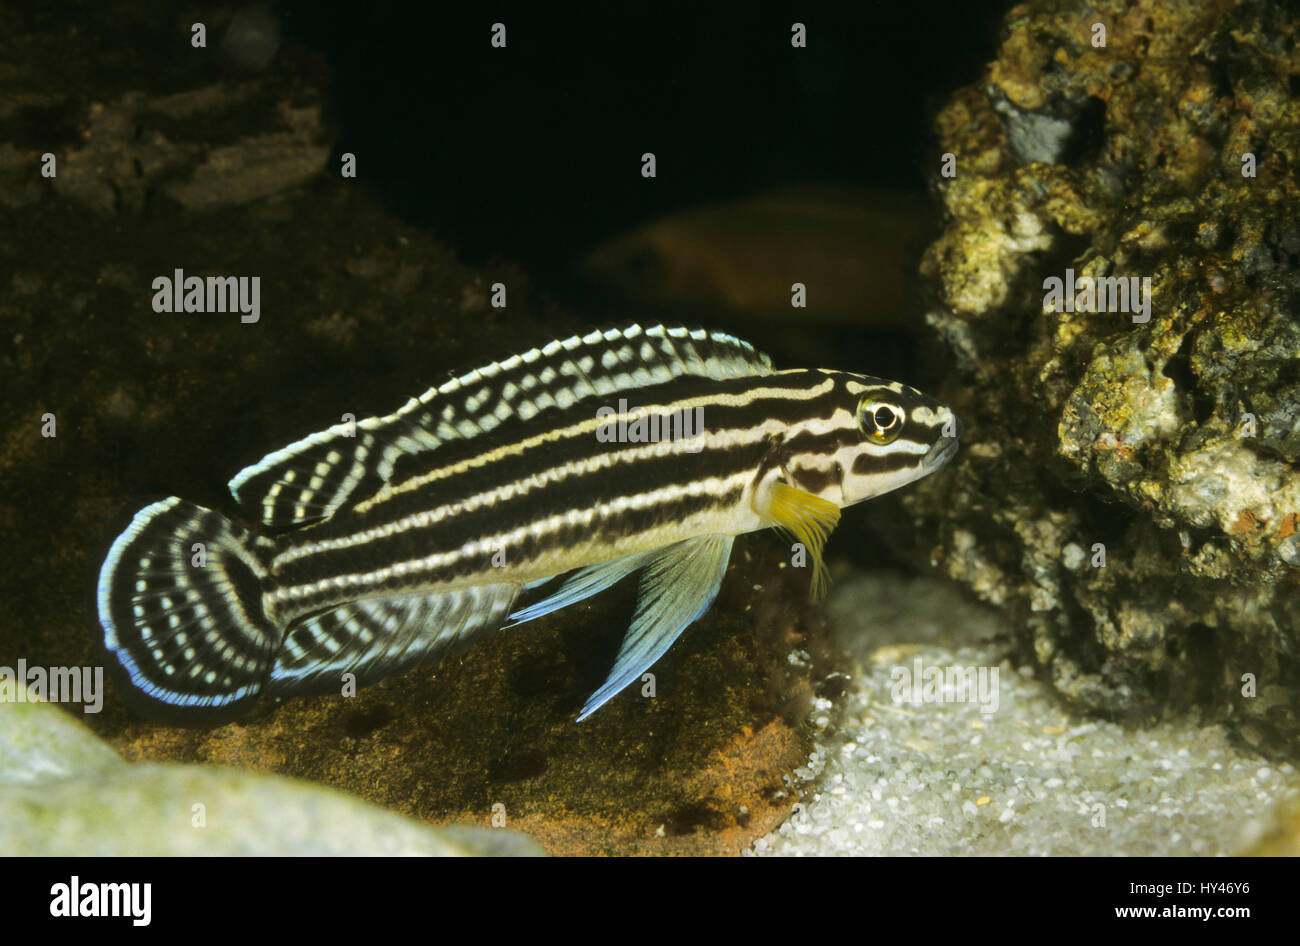 Vierstreifen-Schlankcichlide, Regans Schlankcichlide, Julidochromis regani, convict julie, Regan's Julie Stock Photo